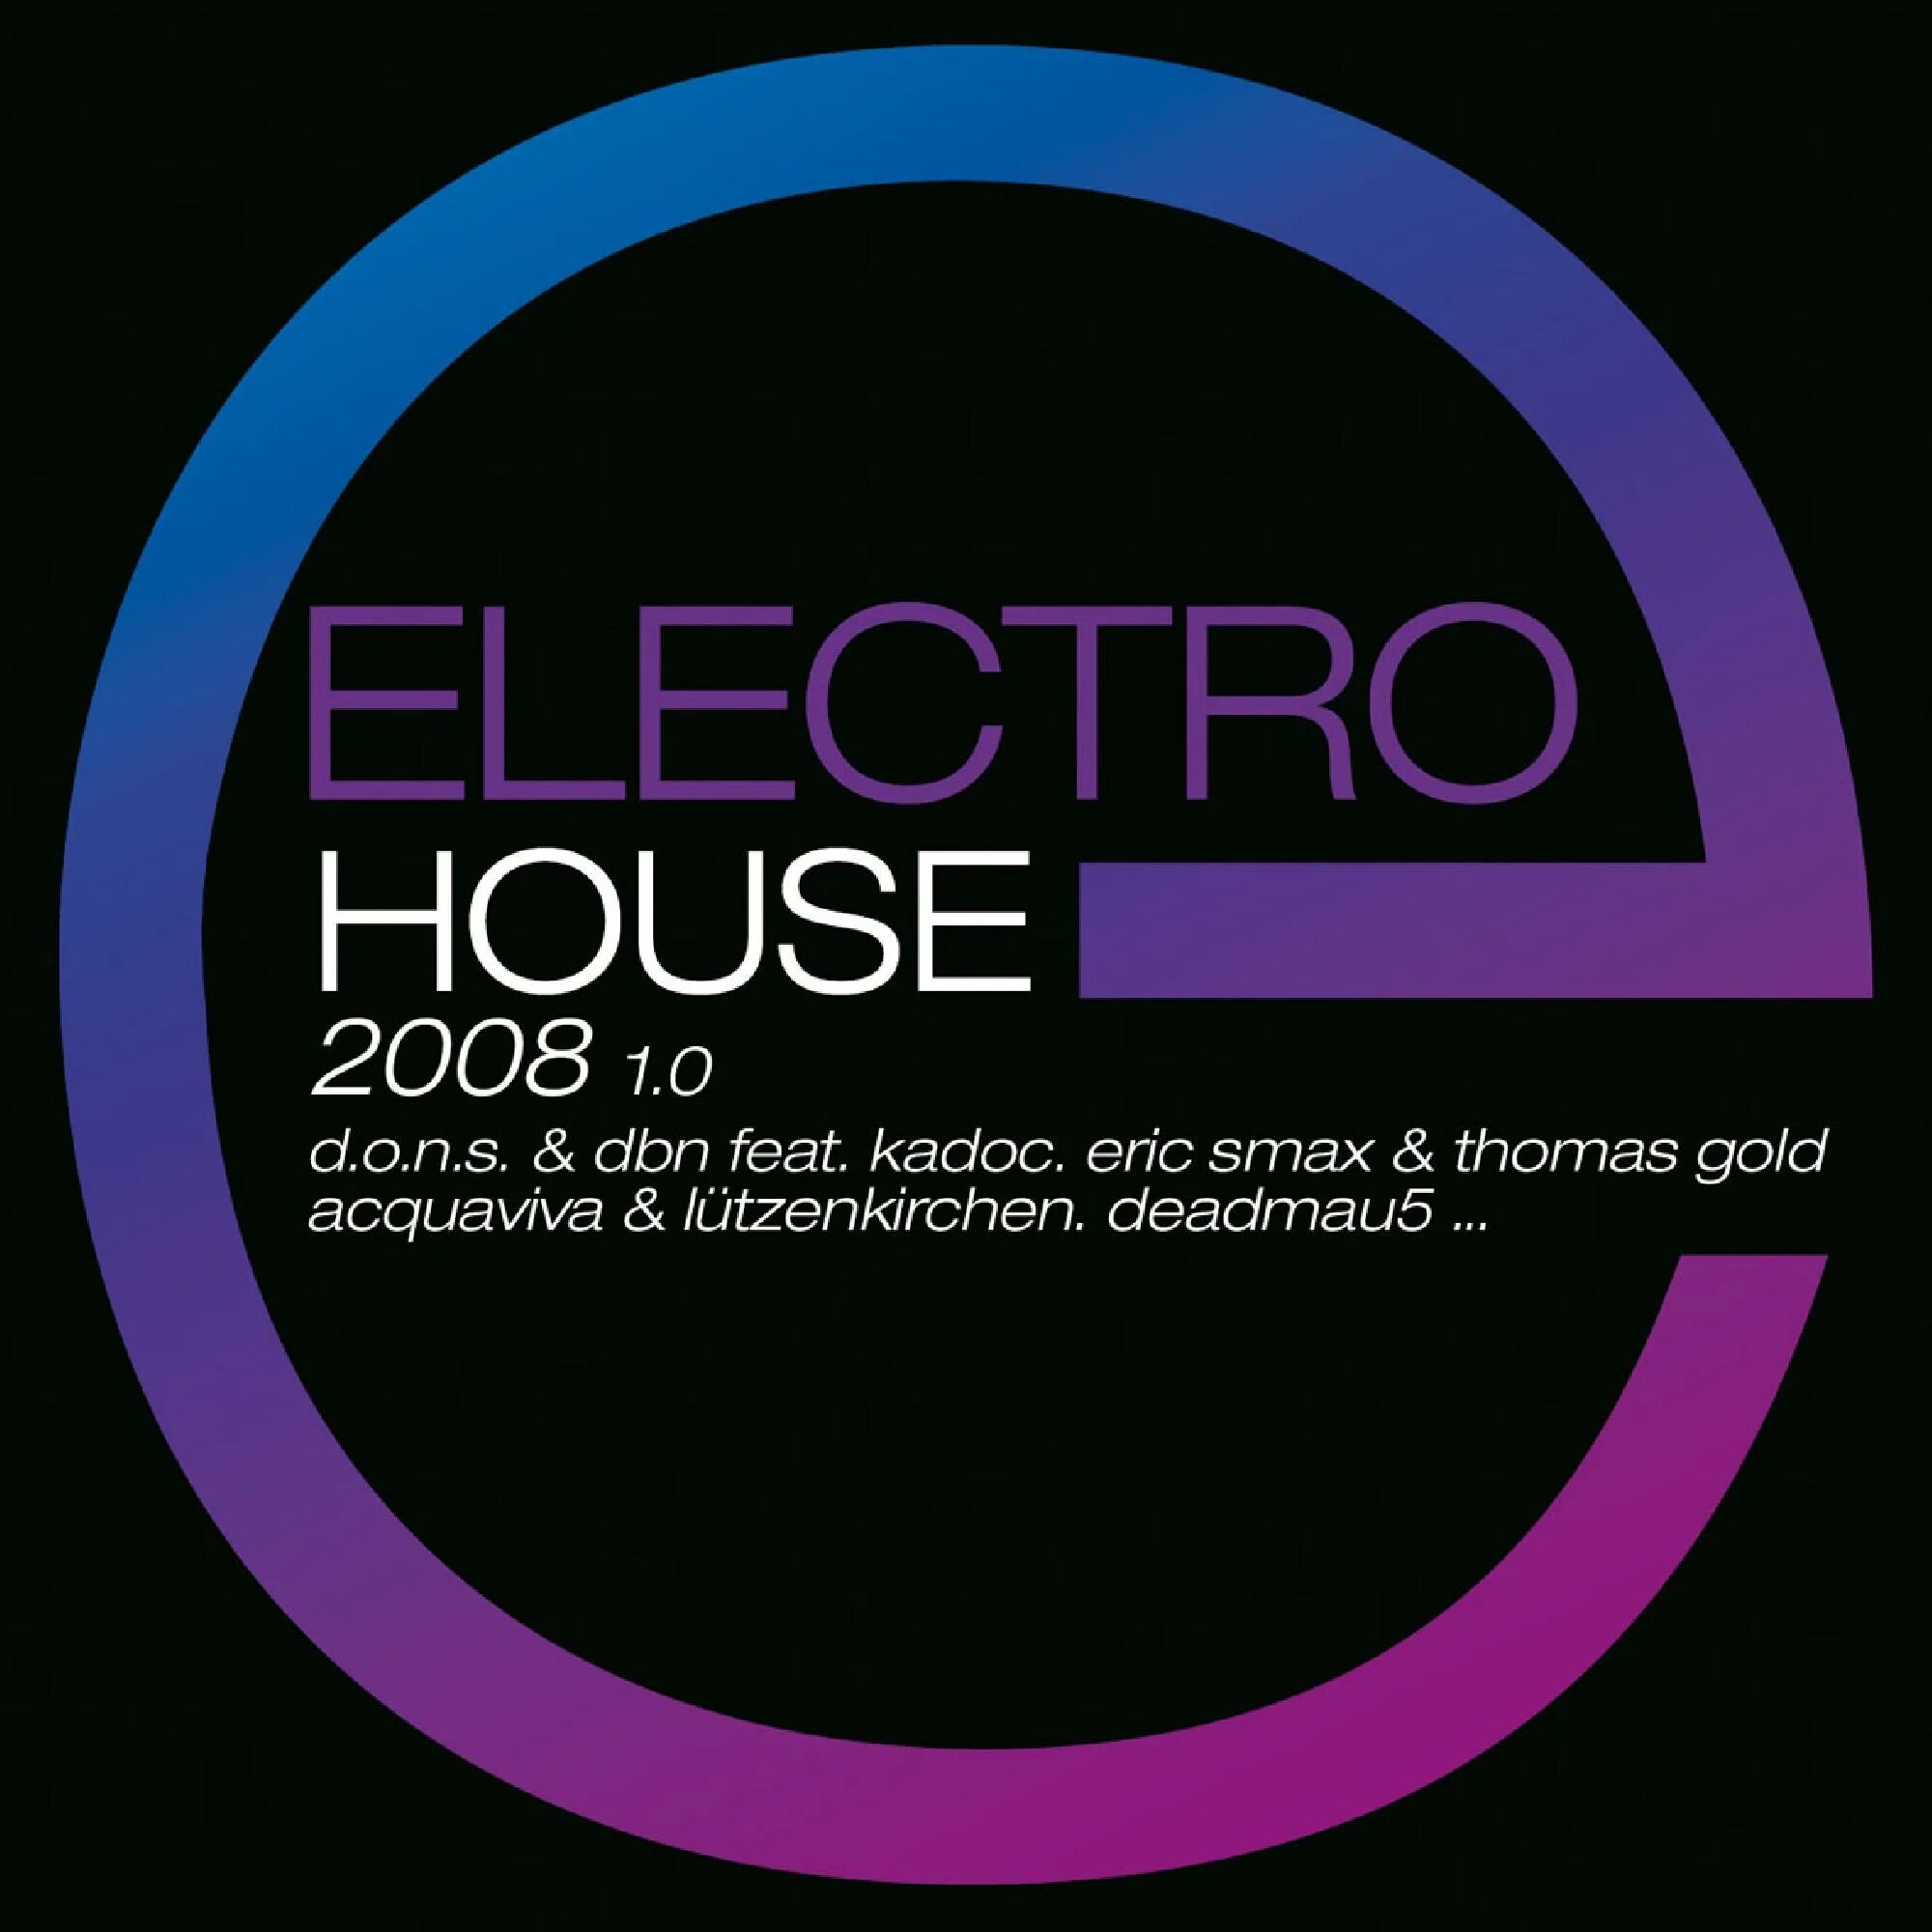 Жесткий электро. Electro House. Electro House 2008 album. Disco House диск. Electro House 2008 обложка.